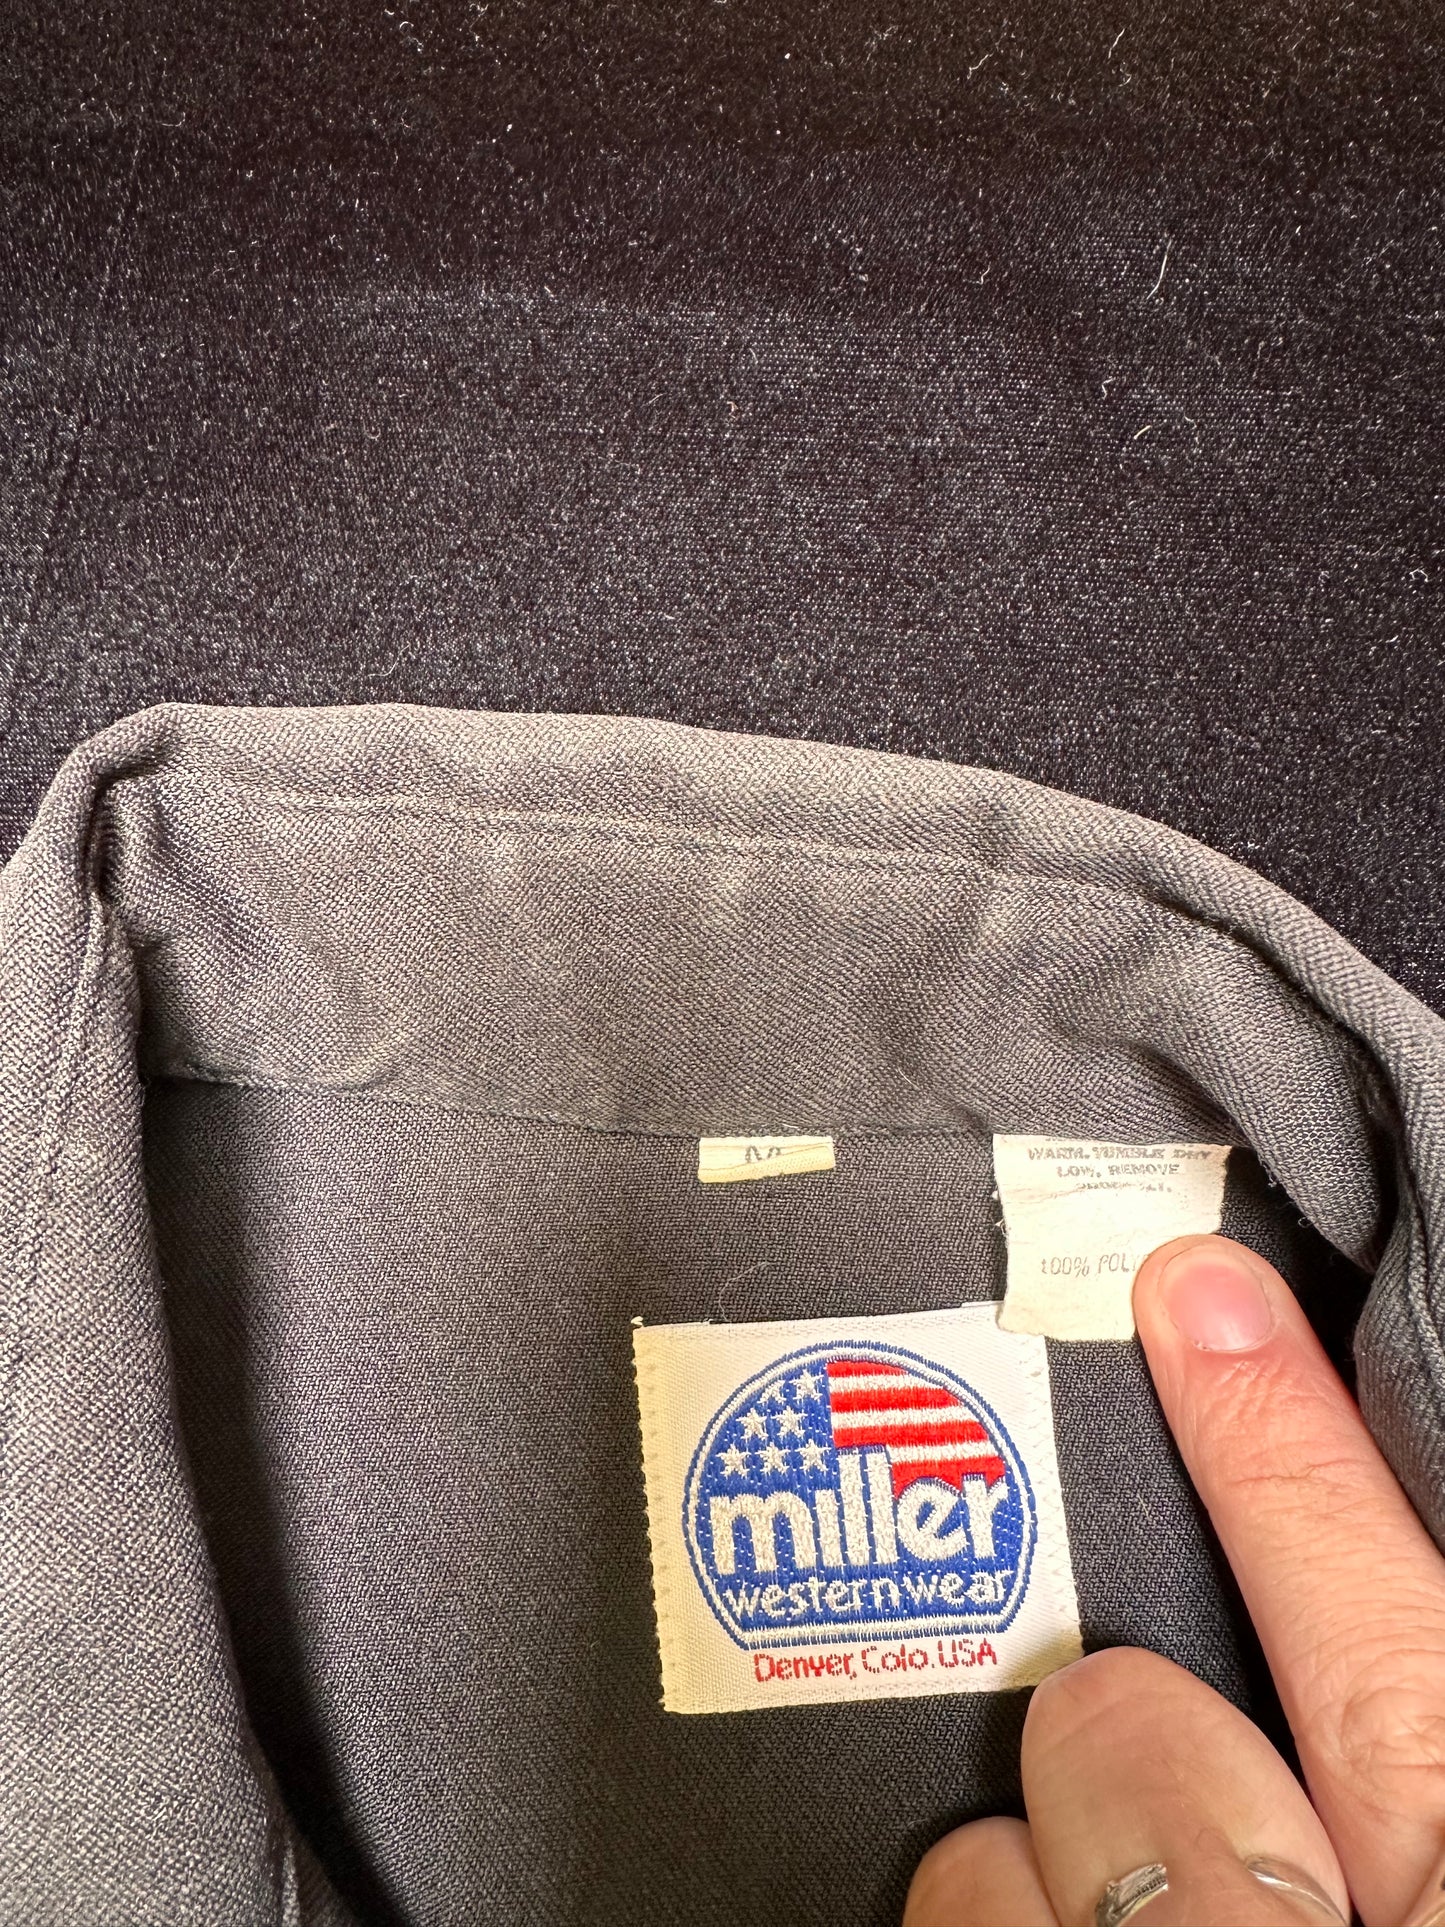 Miller Western wear Button Up